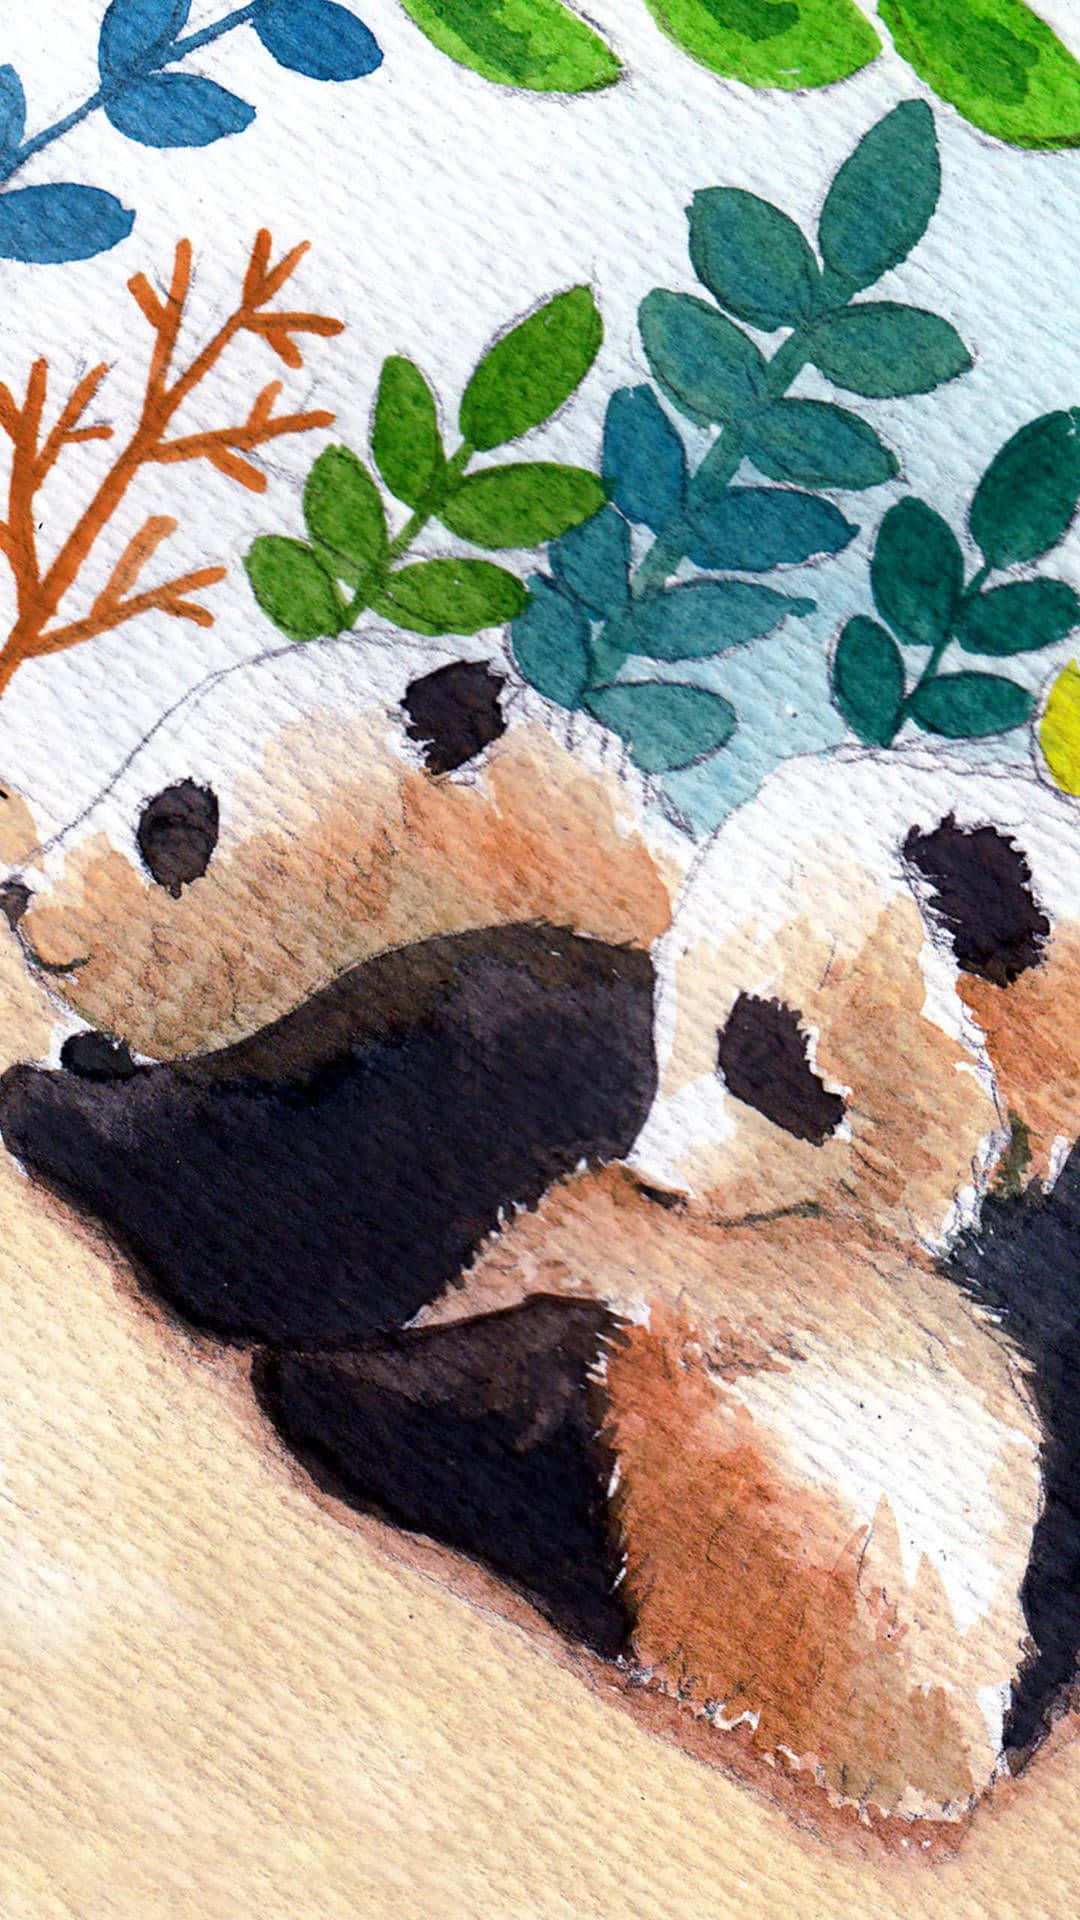 Unlindo Oso Panda Descansa En El Borde De Un Estanque En Su Entorno Natural.